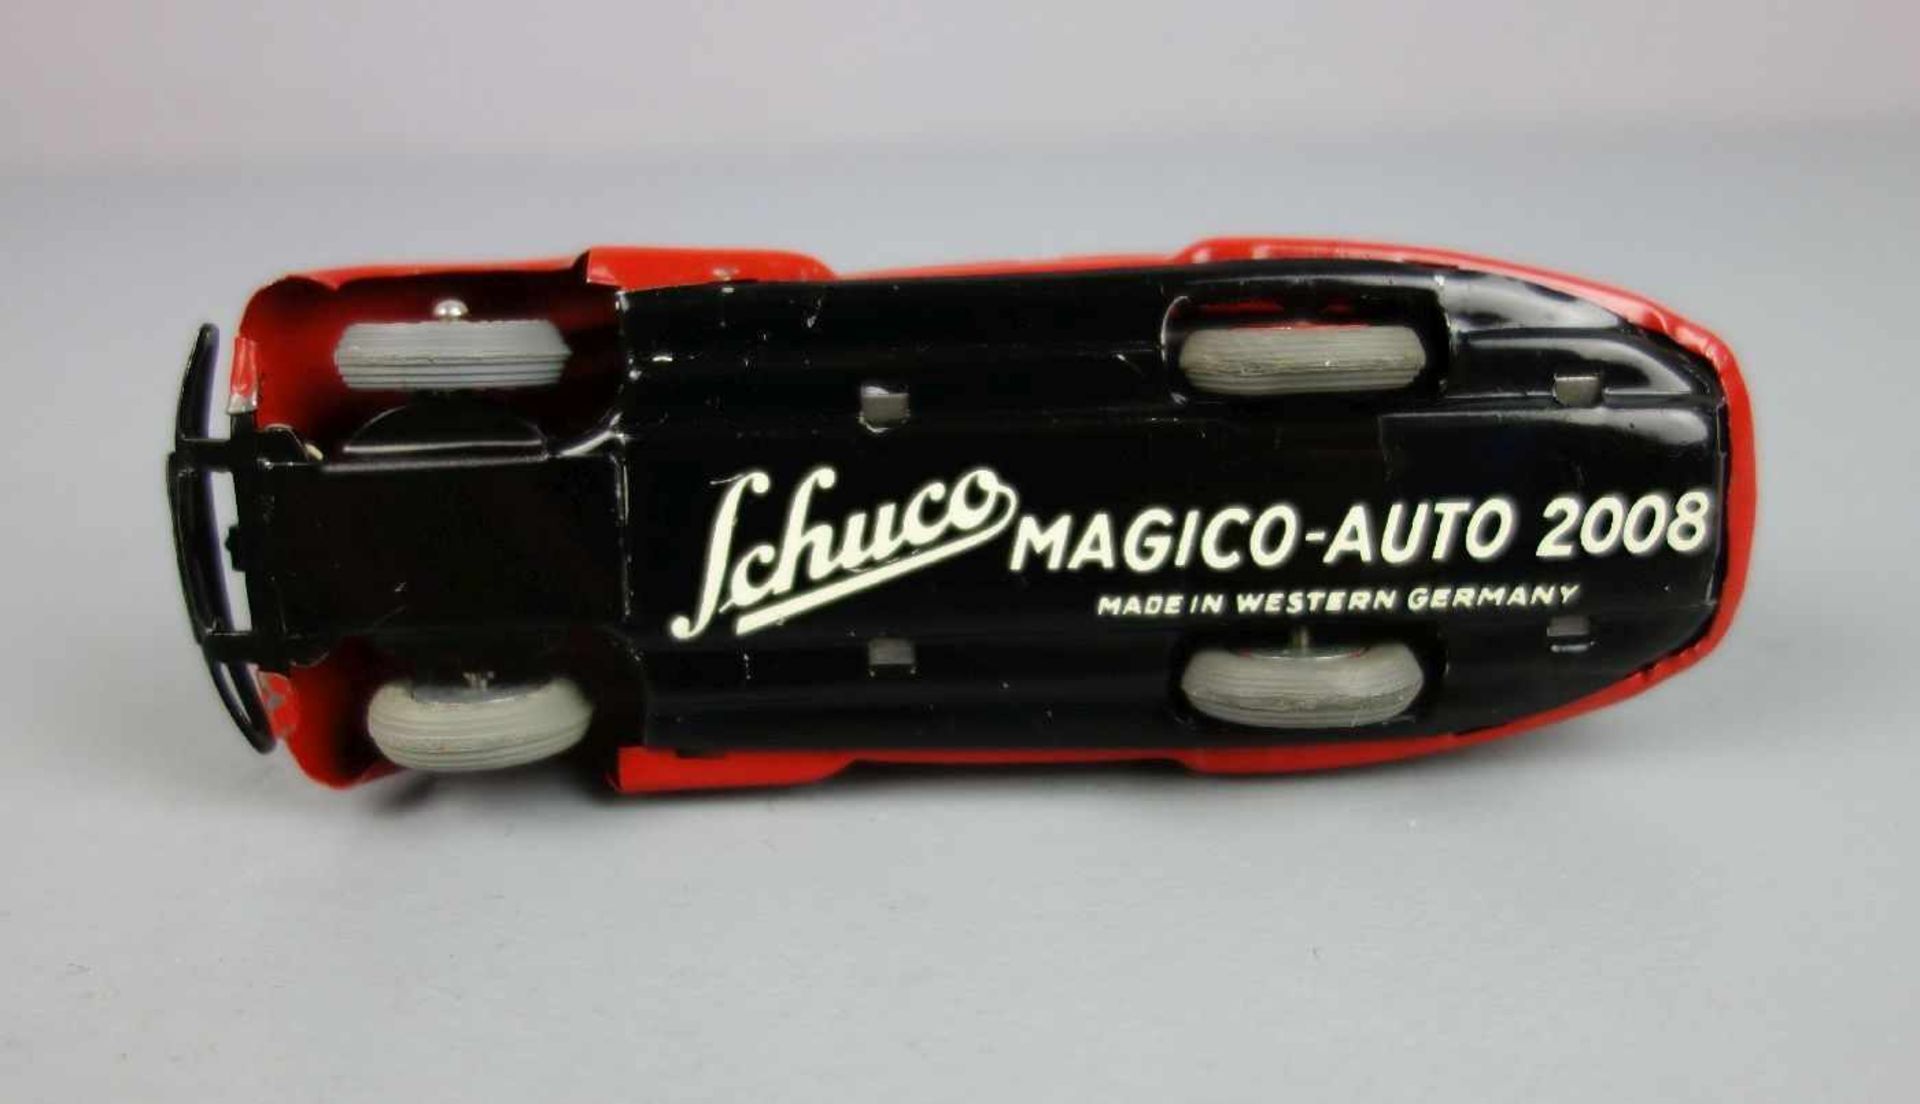 BLECHSPIELZEUG / FAHRZEUG: Schuco Magico-Auto 2008 / tin toy car, Mitte 20. Jh., lithografiertes - Image 6 of 6